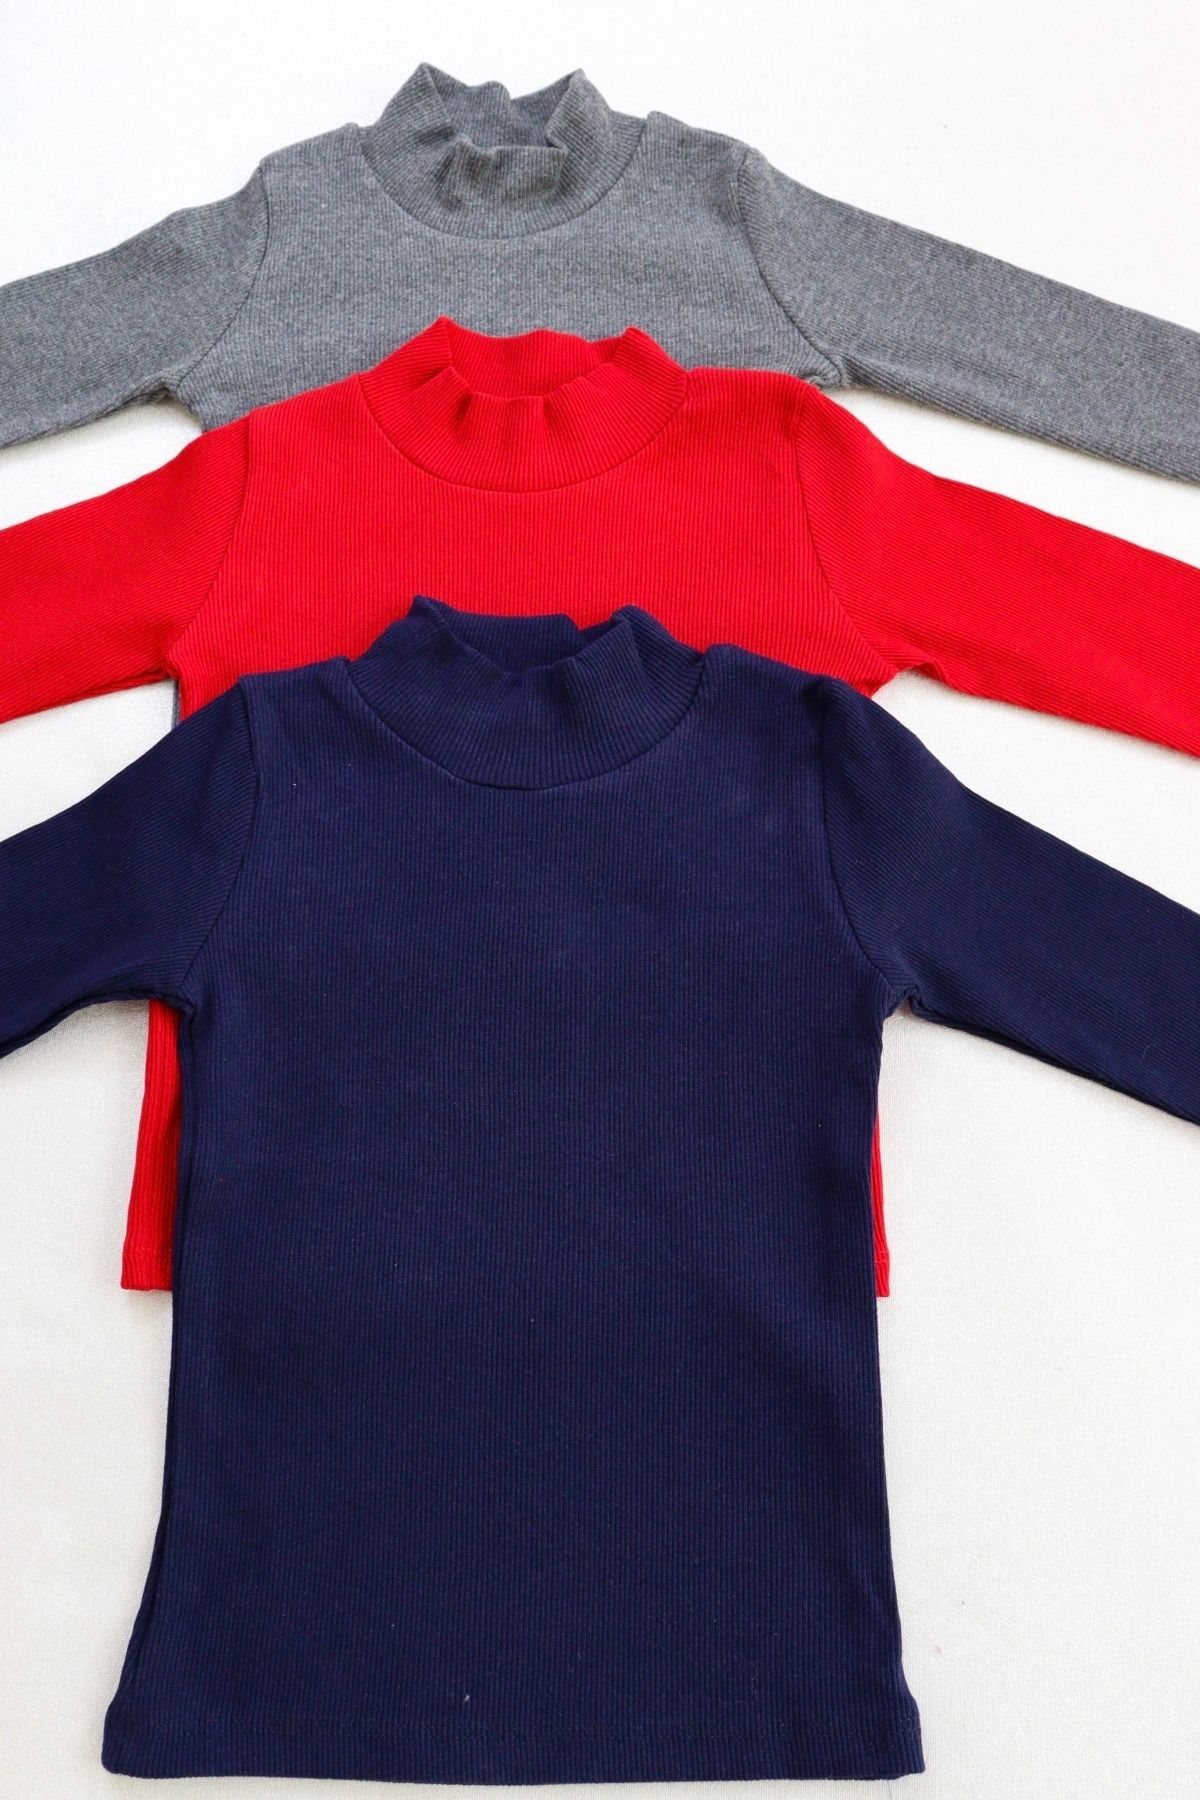 HARİKA KİDS Kız-Erkek Çocuk 3'lü Paket Basic Örme Yarım Balıkçı Yaka Kaşkorse Pamuklu Uzun Kollu Penye T-shirt